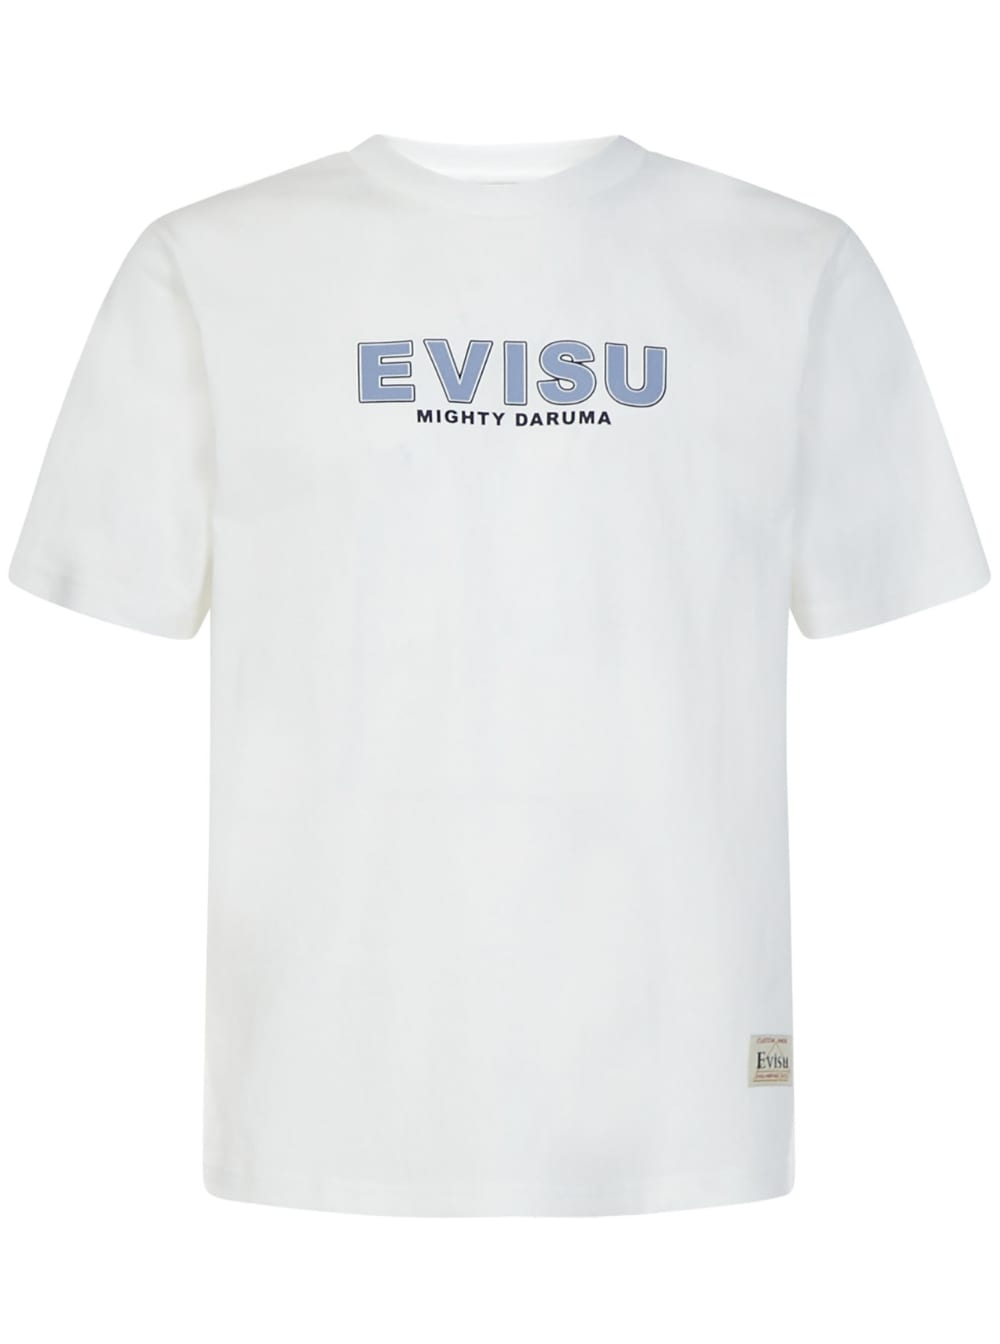 Daruma Double Daicock White Cotton T-shirt Evisu Man